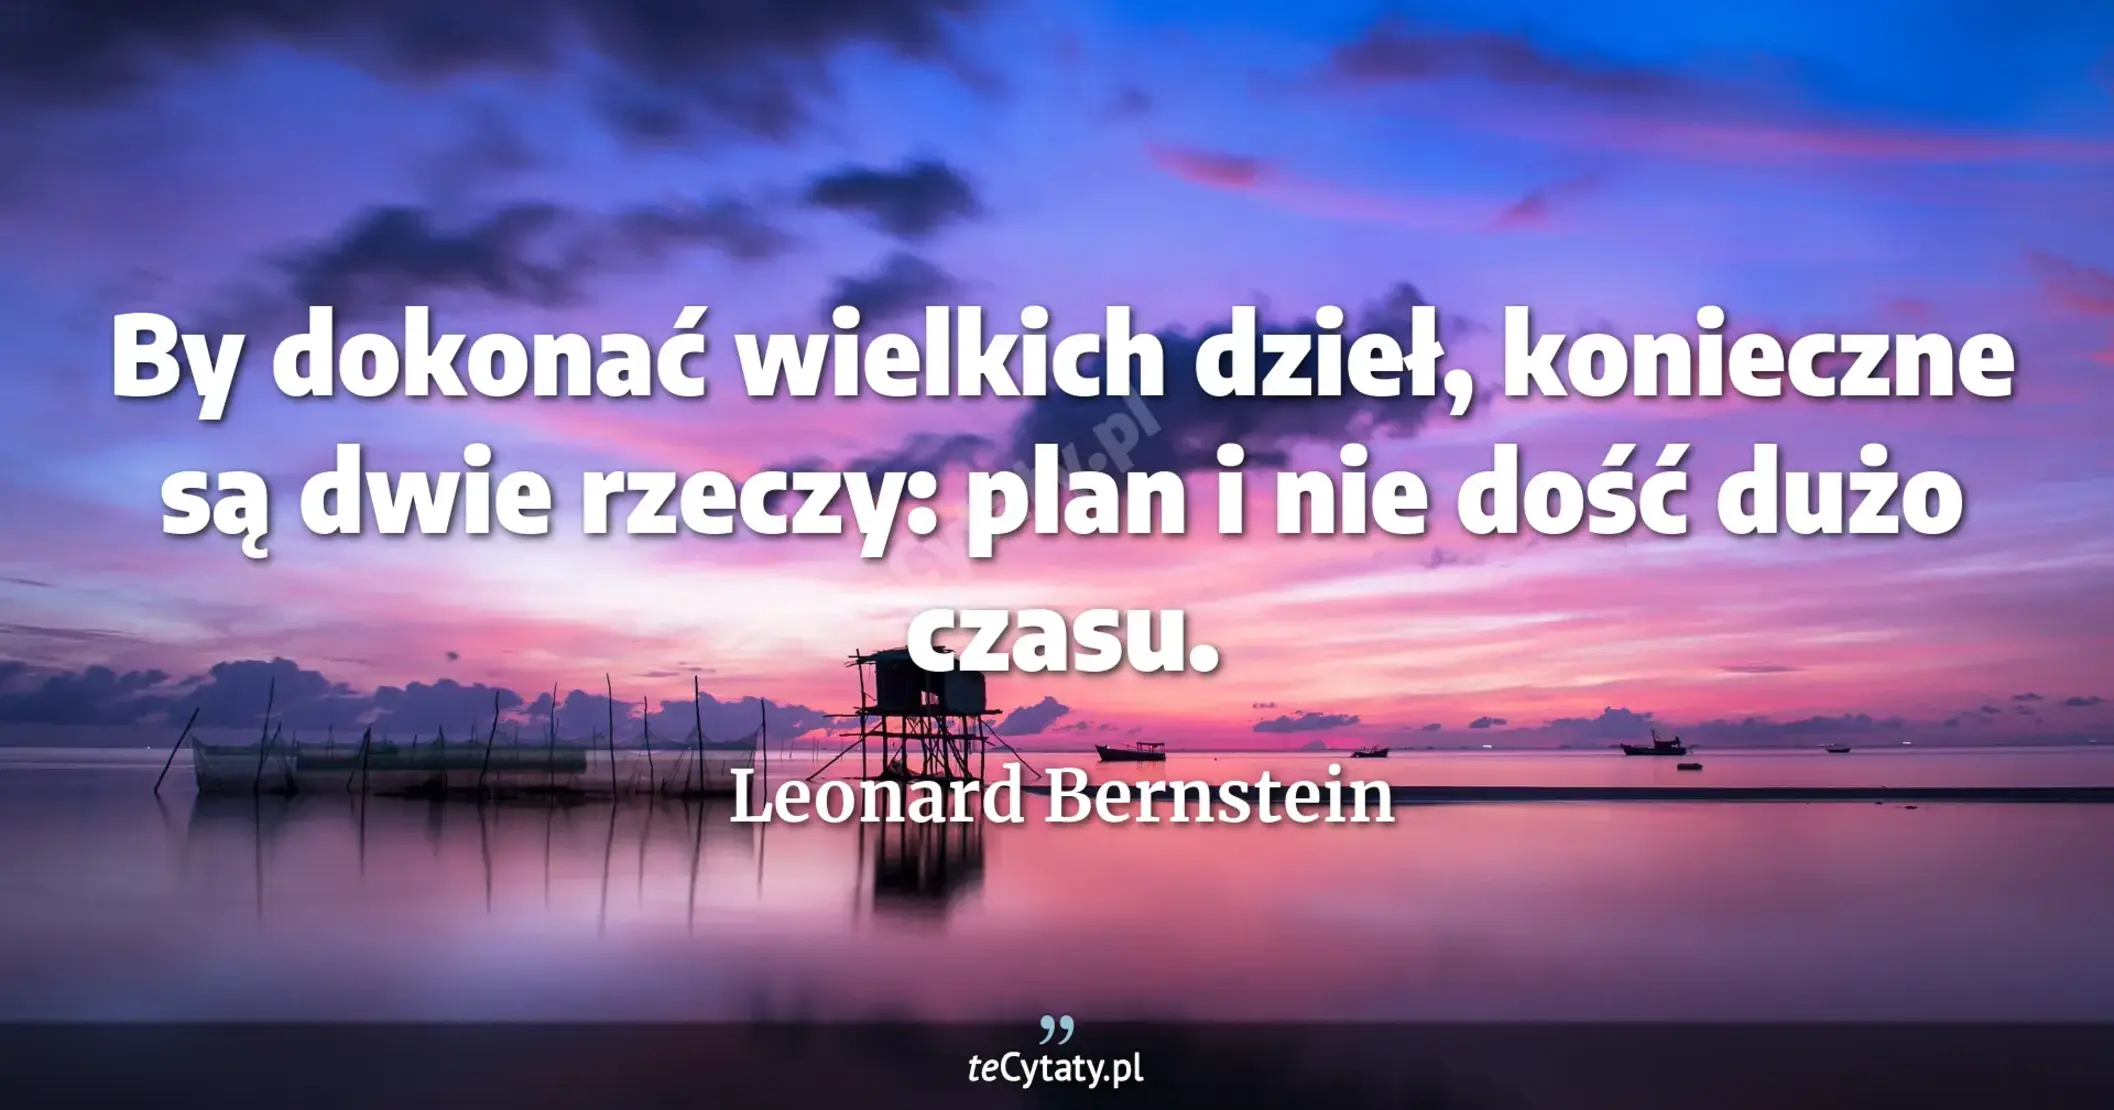 By dokonać wielkich dzieł, konieczne są dwie rzeczy: plan i nie dość dużo czasu. - Leonard Bernstein